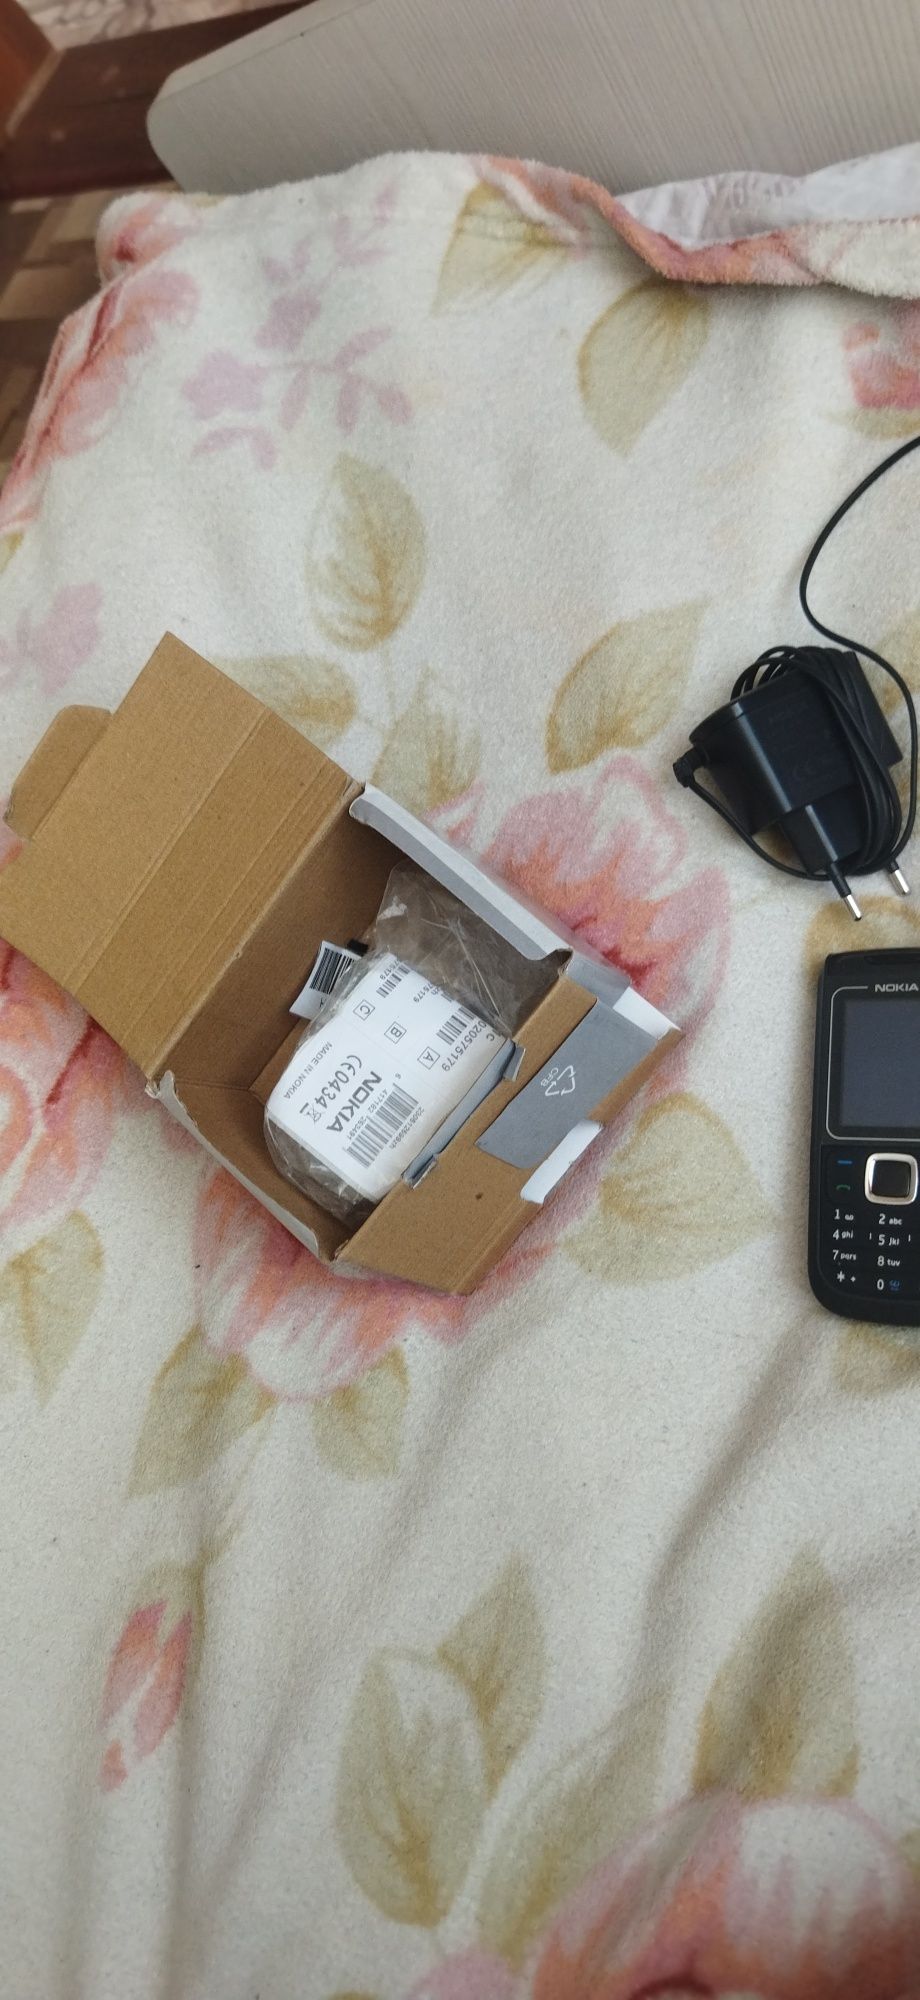 Продается новый телефон для связи Nokia 1681s